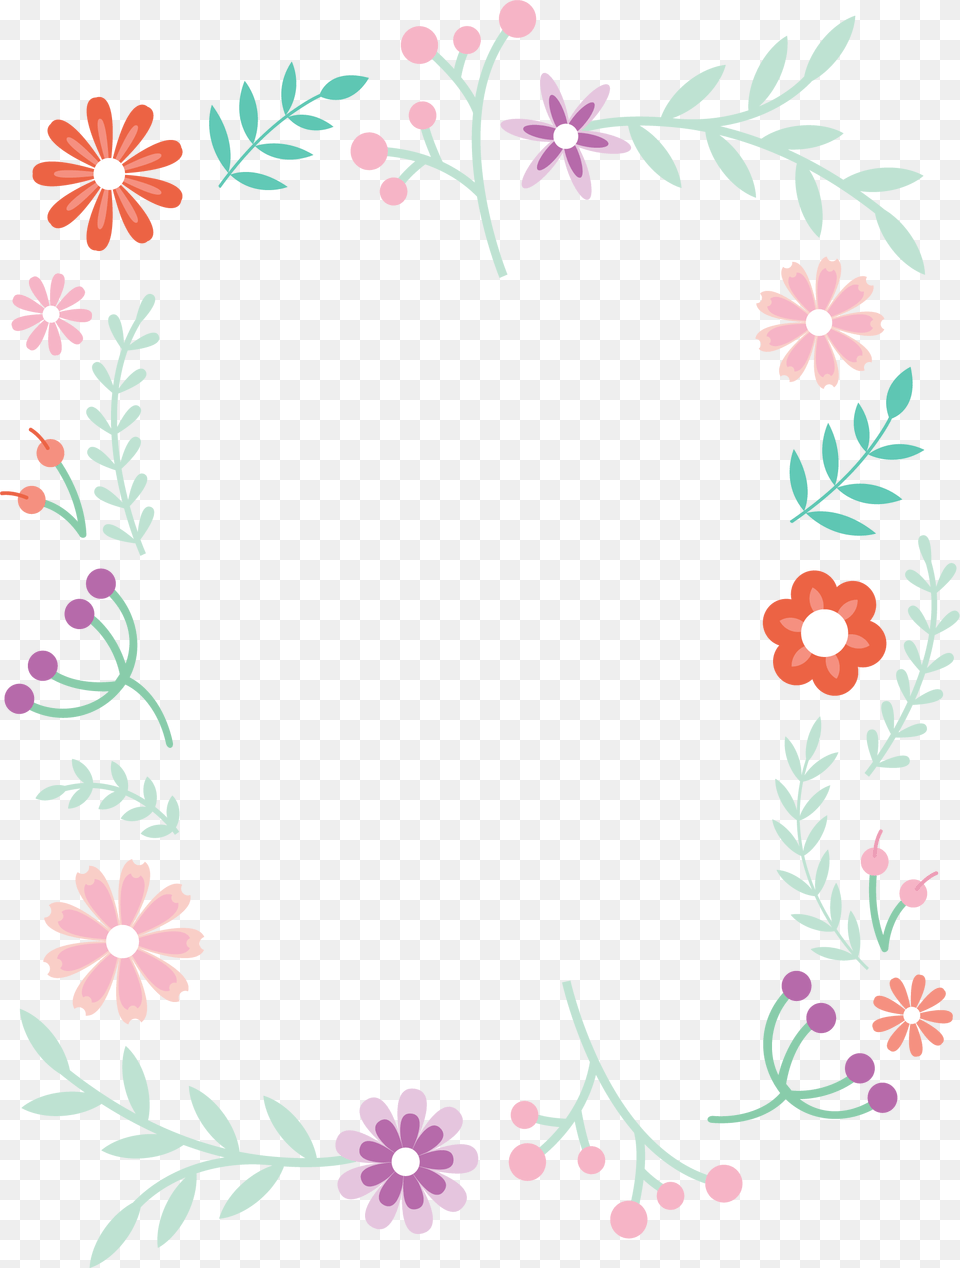 Design Border Simple Flower, Art, Floral Design, Graphics, Pattern Png Image